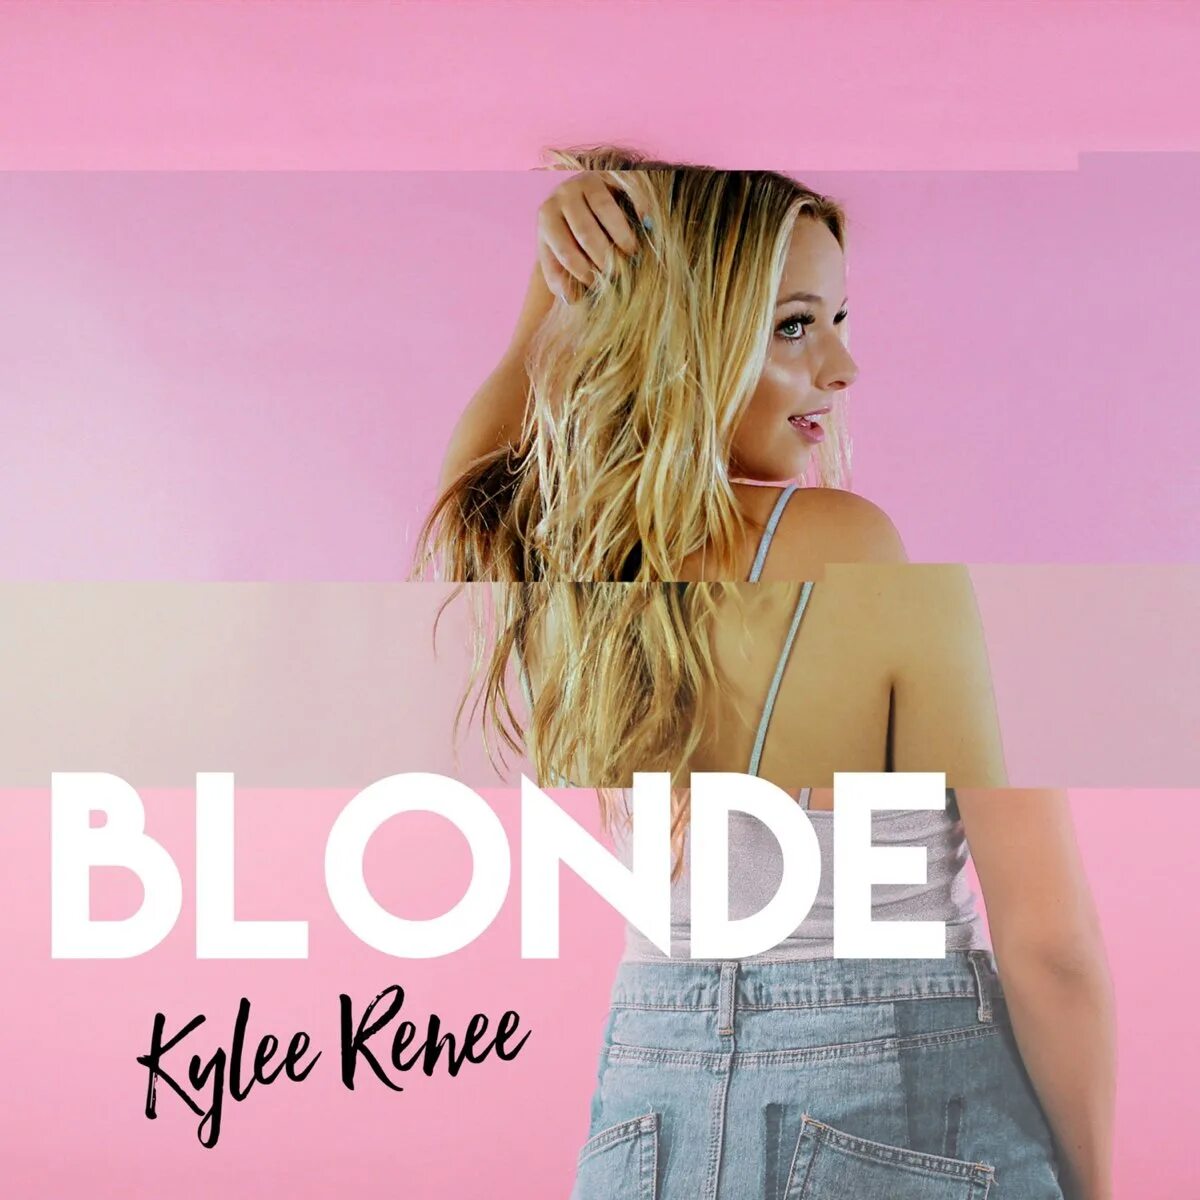 Песни блондинок. Blondie альбомы. Блондинка песня.